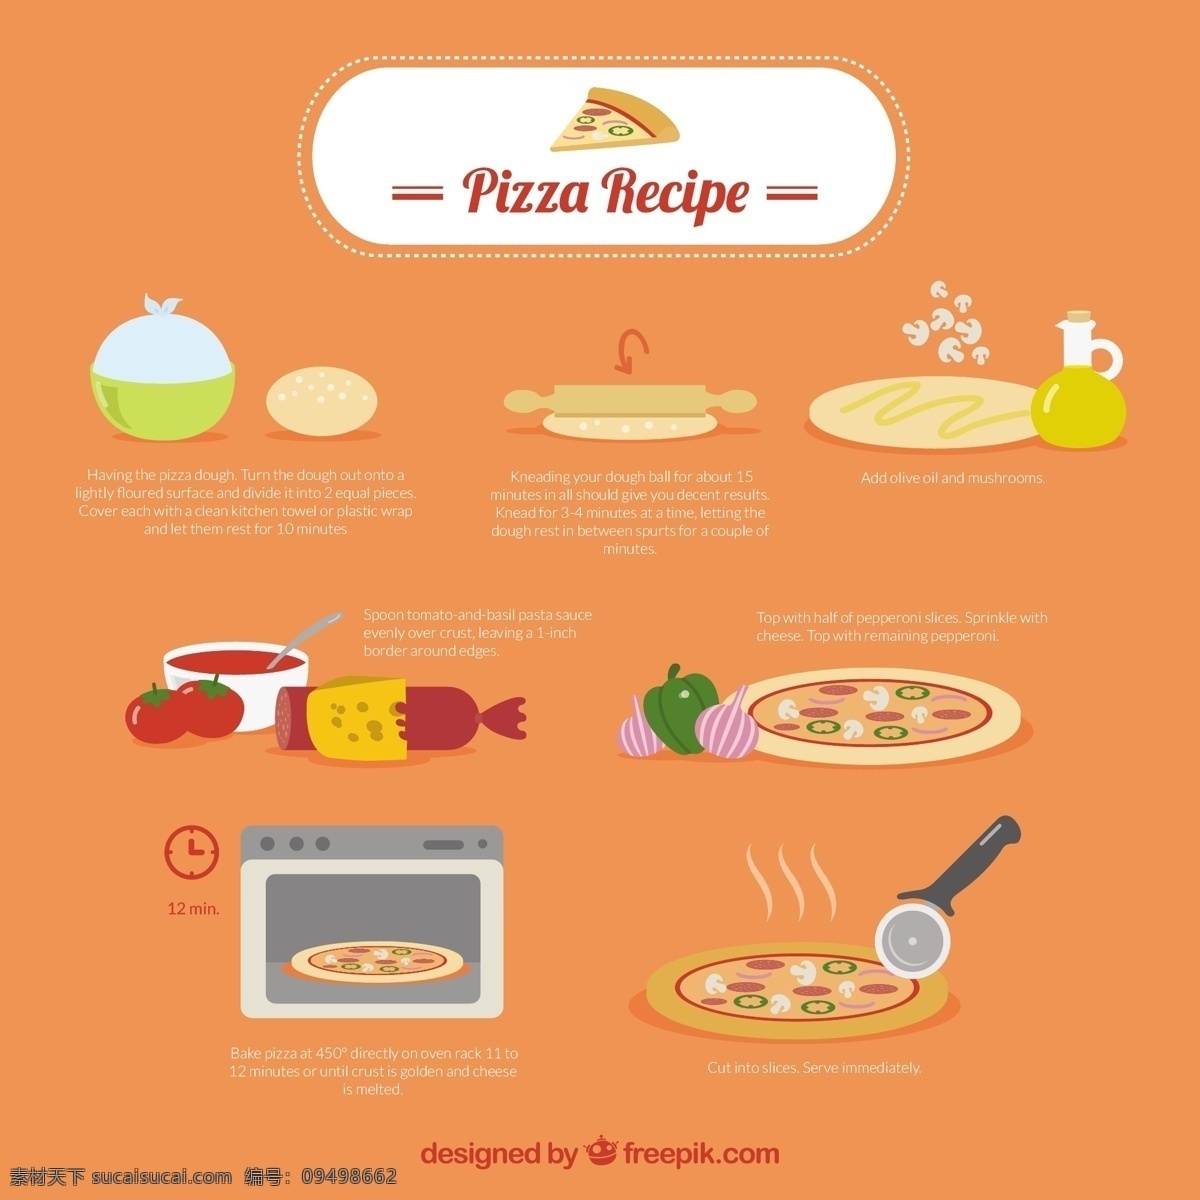 比萨 食谱 信息 图表 食品 菜单 餐厅 披萨 蛋糕 家 模板 厨房 面包房 图形 烹饪 有机 意大利 健康 饮食 营养 配方 吃 橙色